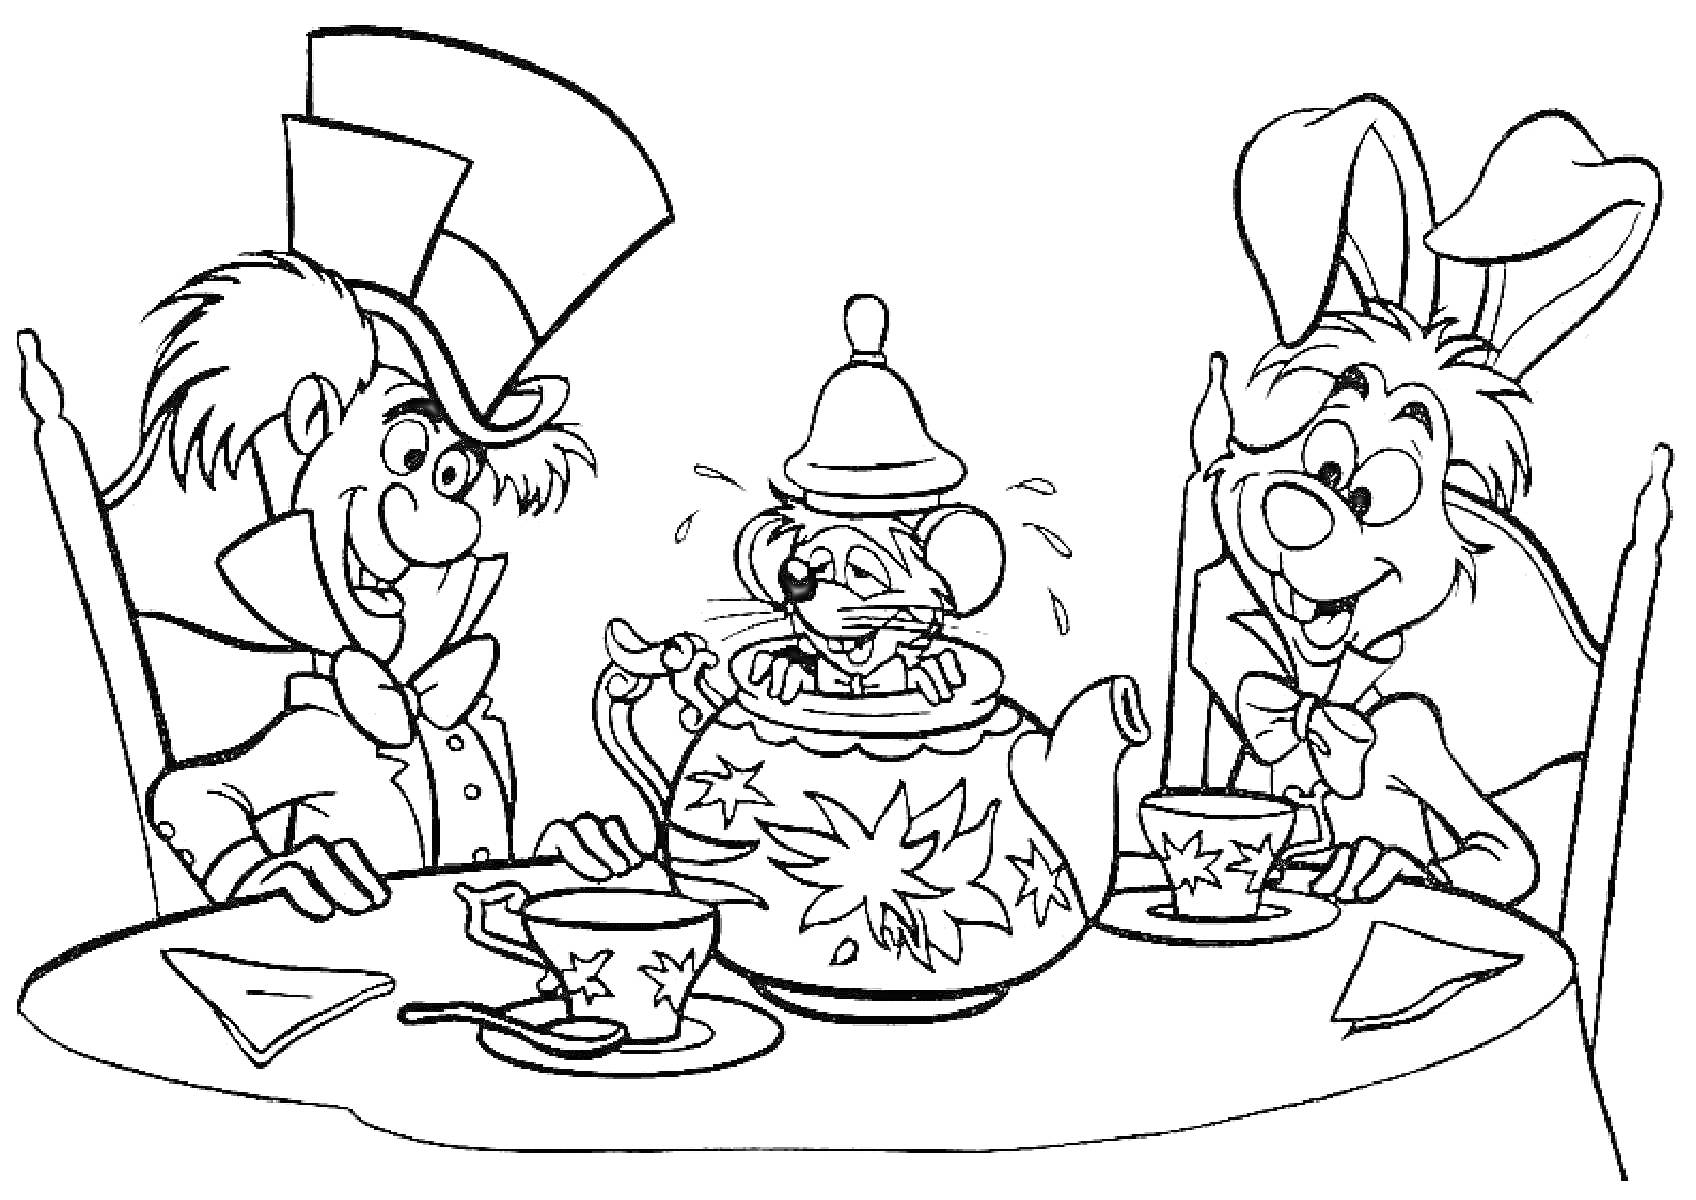 Чаепитие с Безумным Шляпником, Соней и Белым Кроликом, сидящими за столом с чайником и чашками